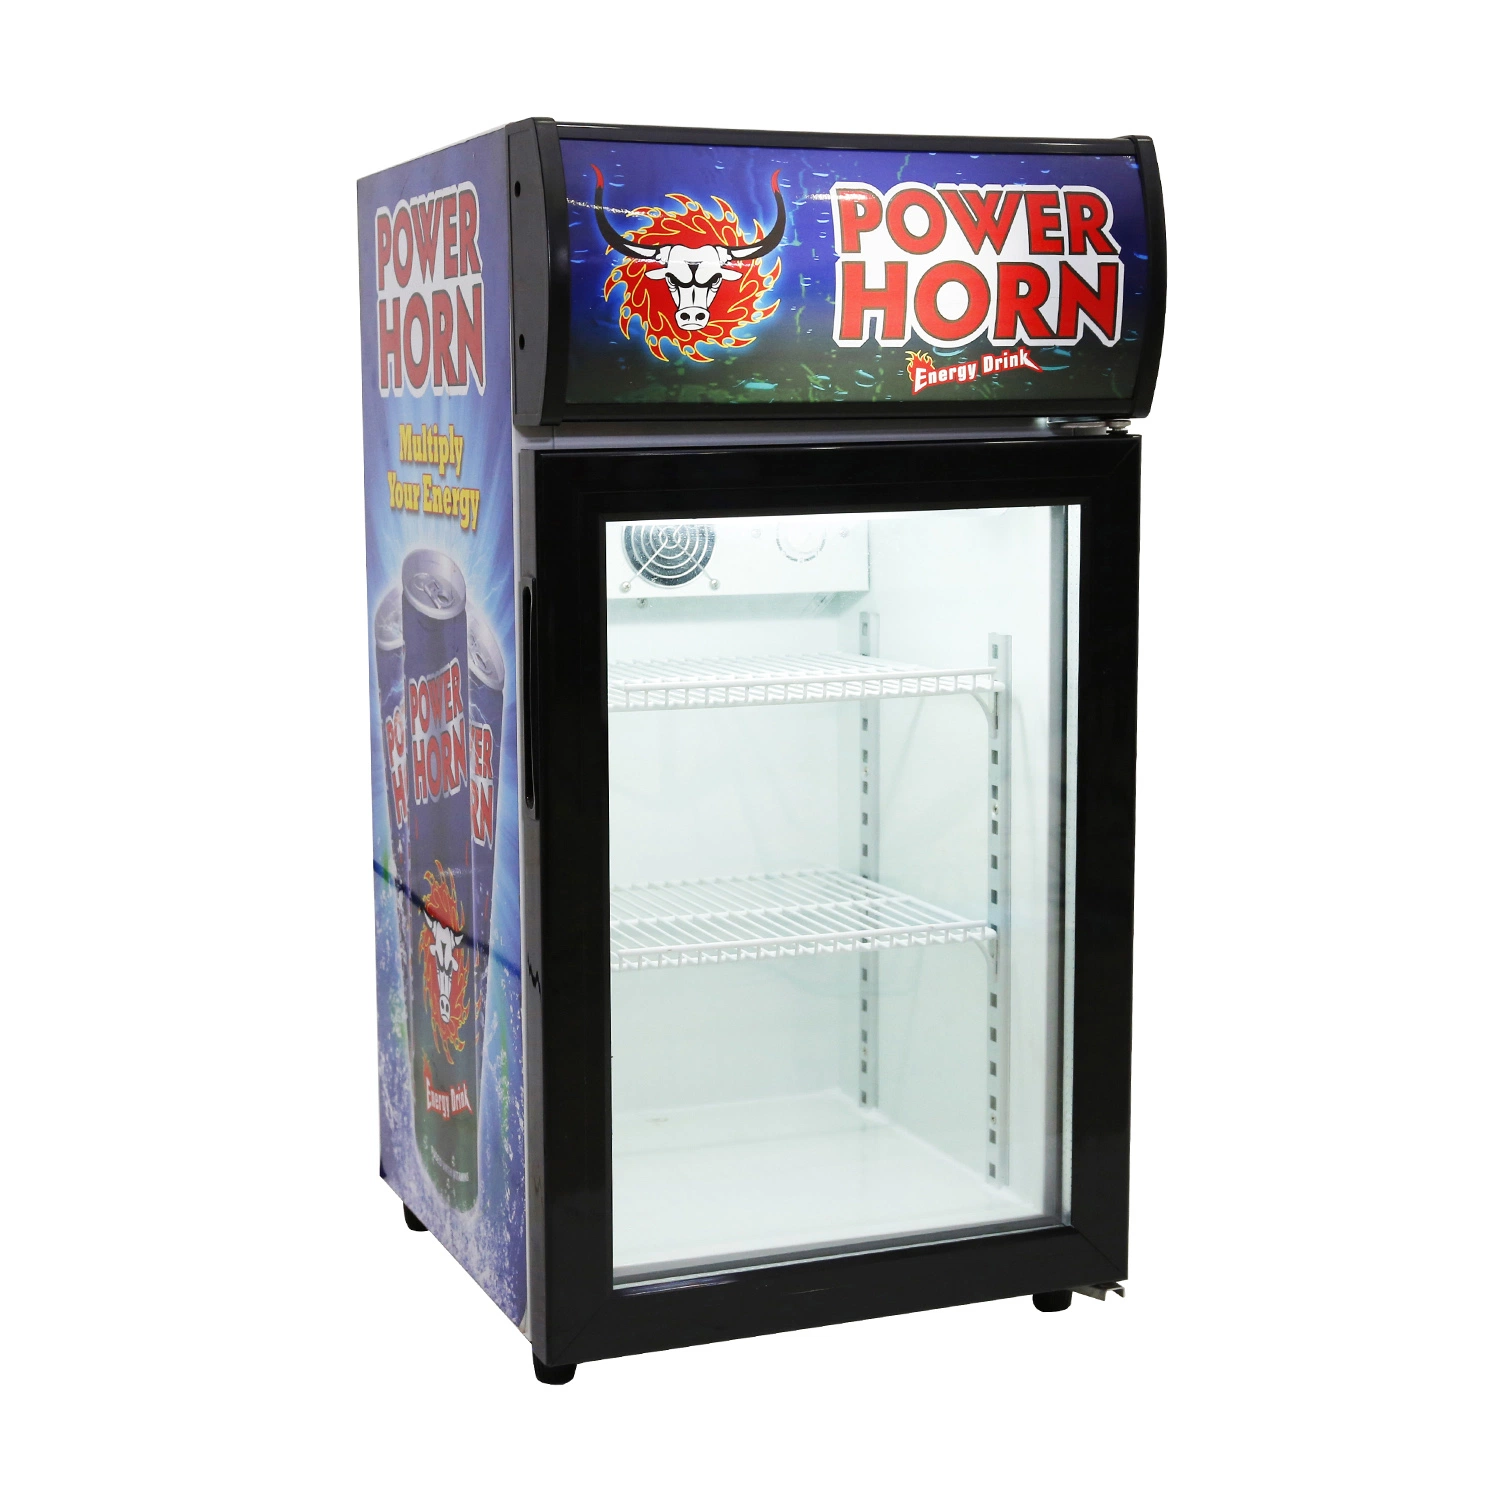 Ice-Cream -18 graus Celsius Freezer Autoportante Frigorífico Portable exibição comercial de recordações armazenar a estação de gás Ice-Cream vender